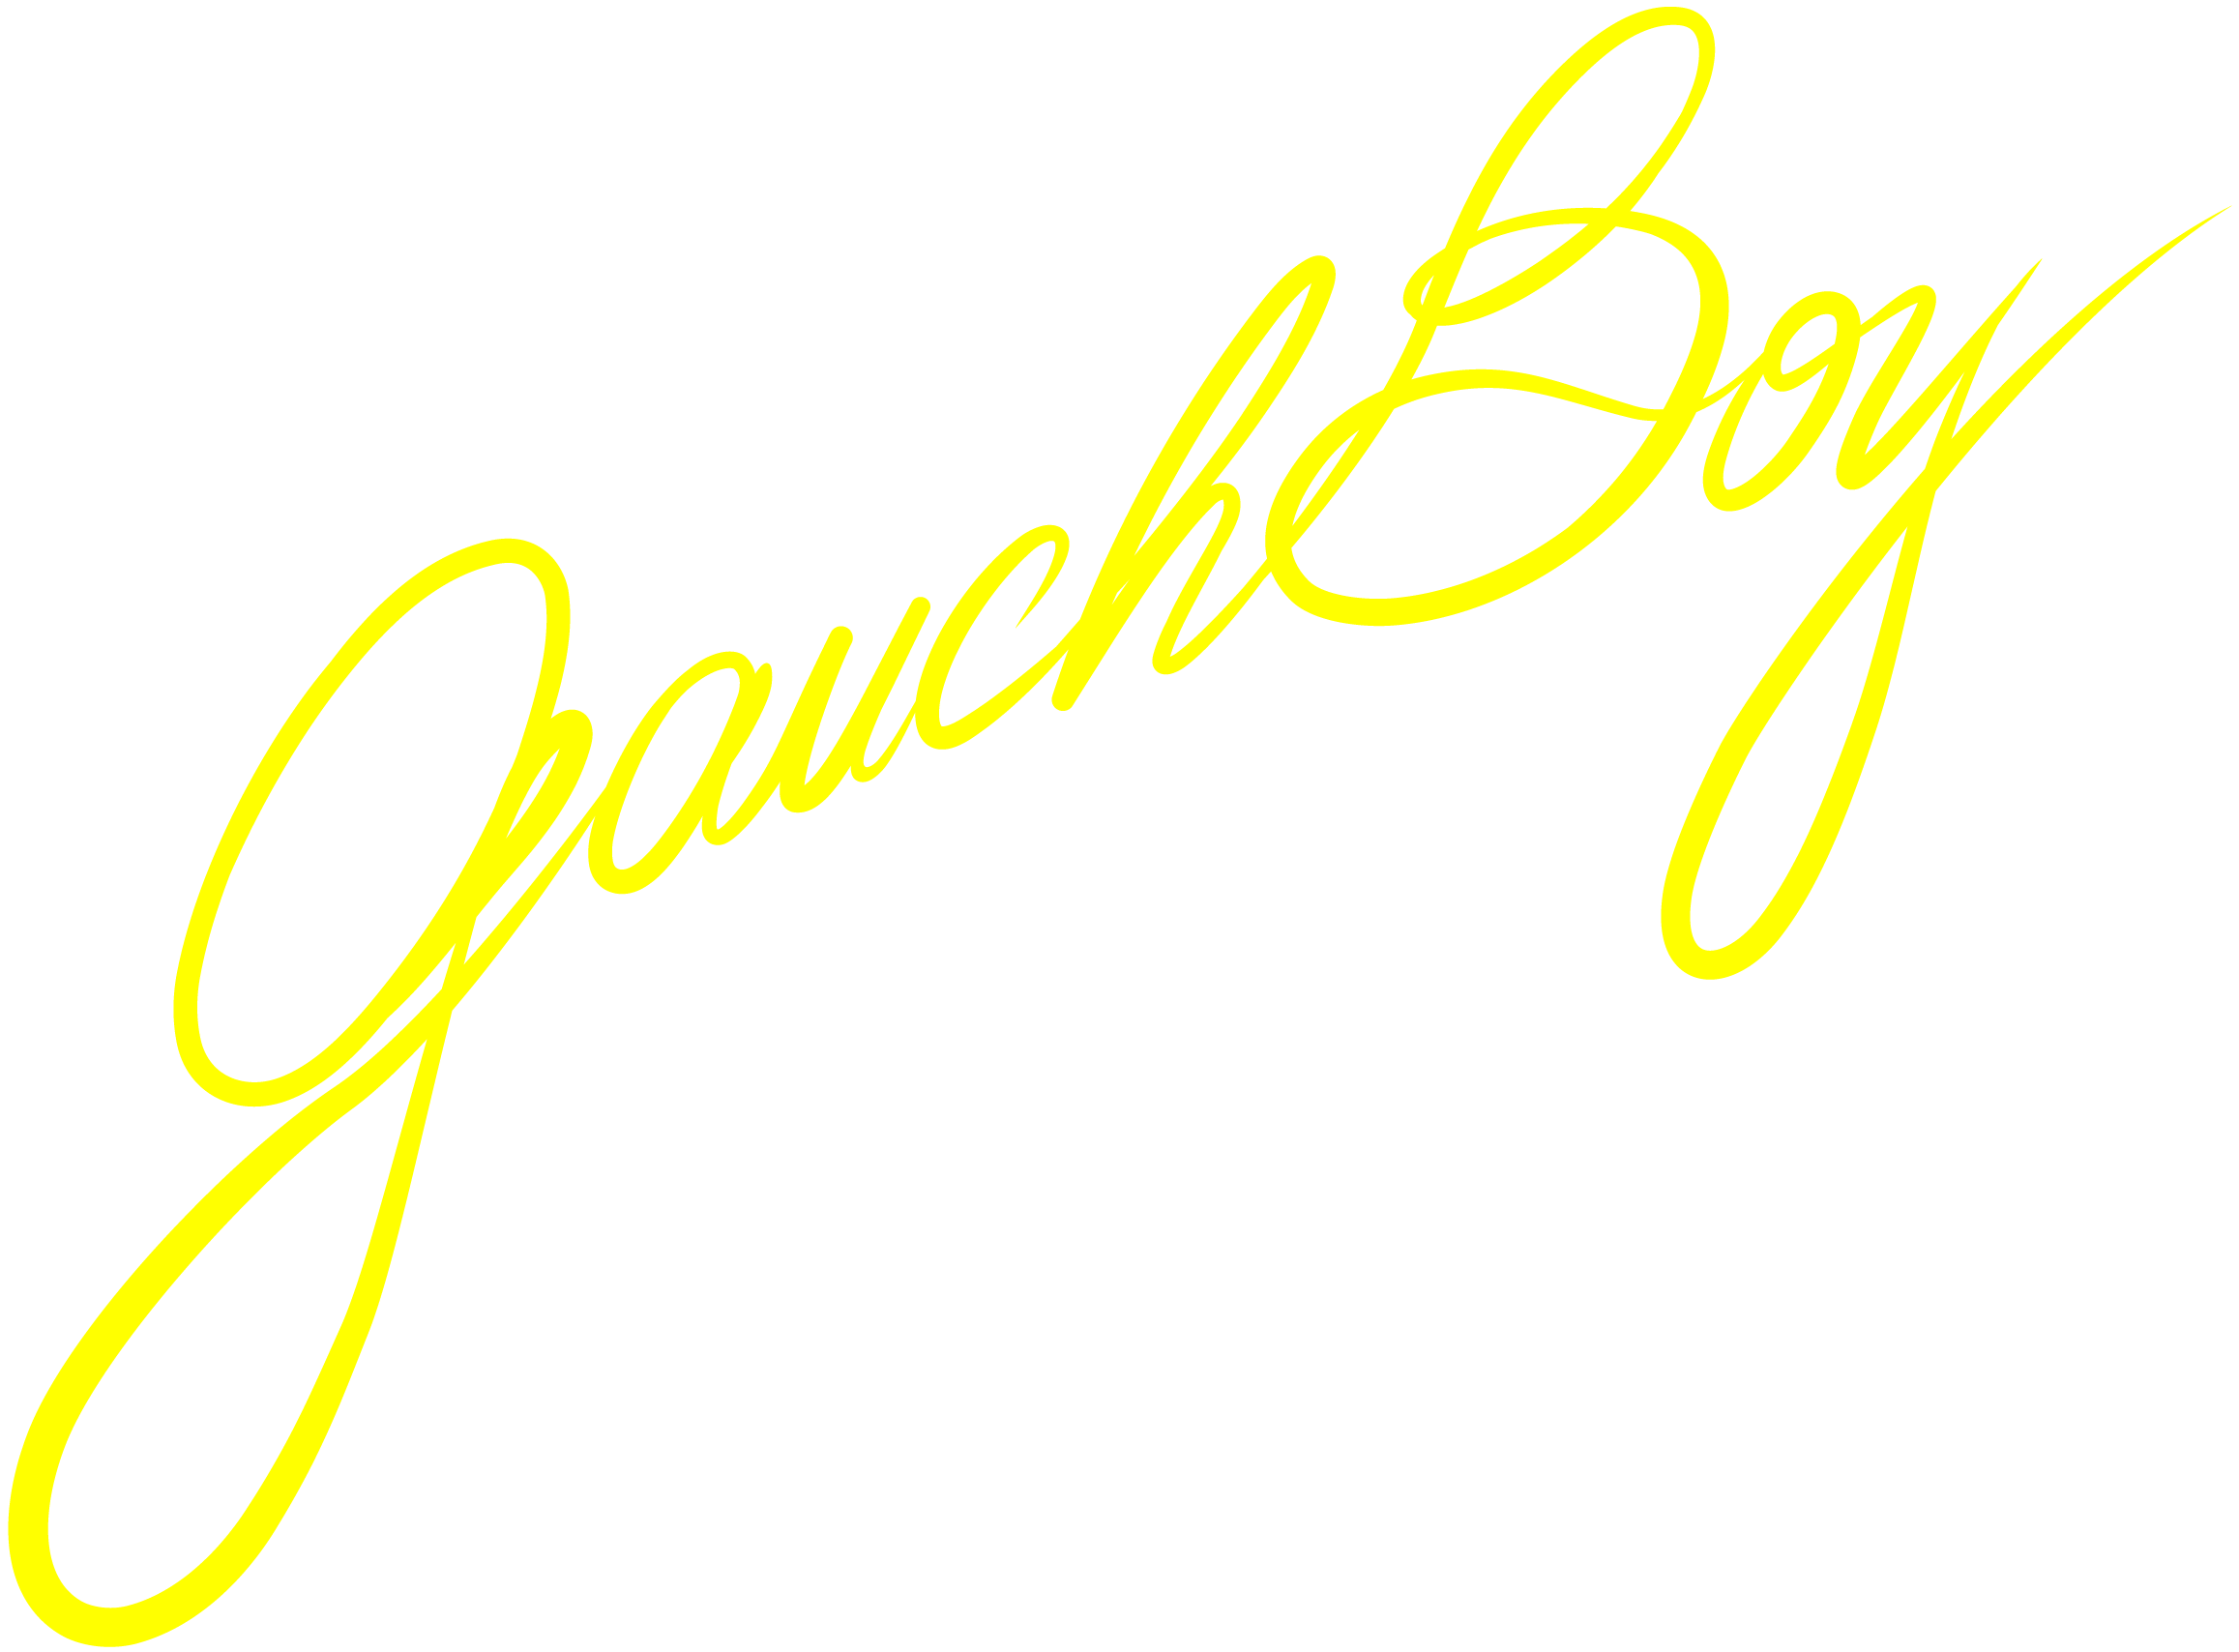 GauchBoy